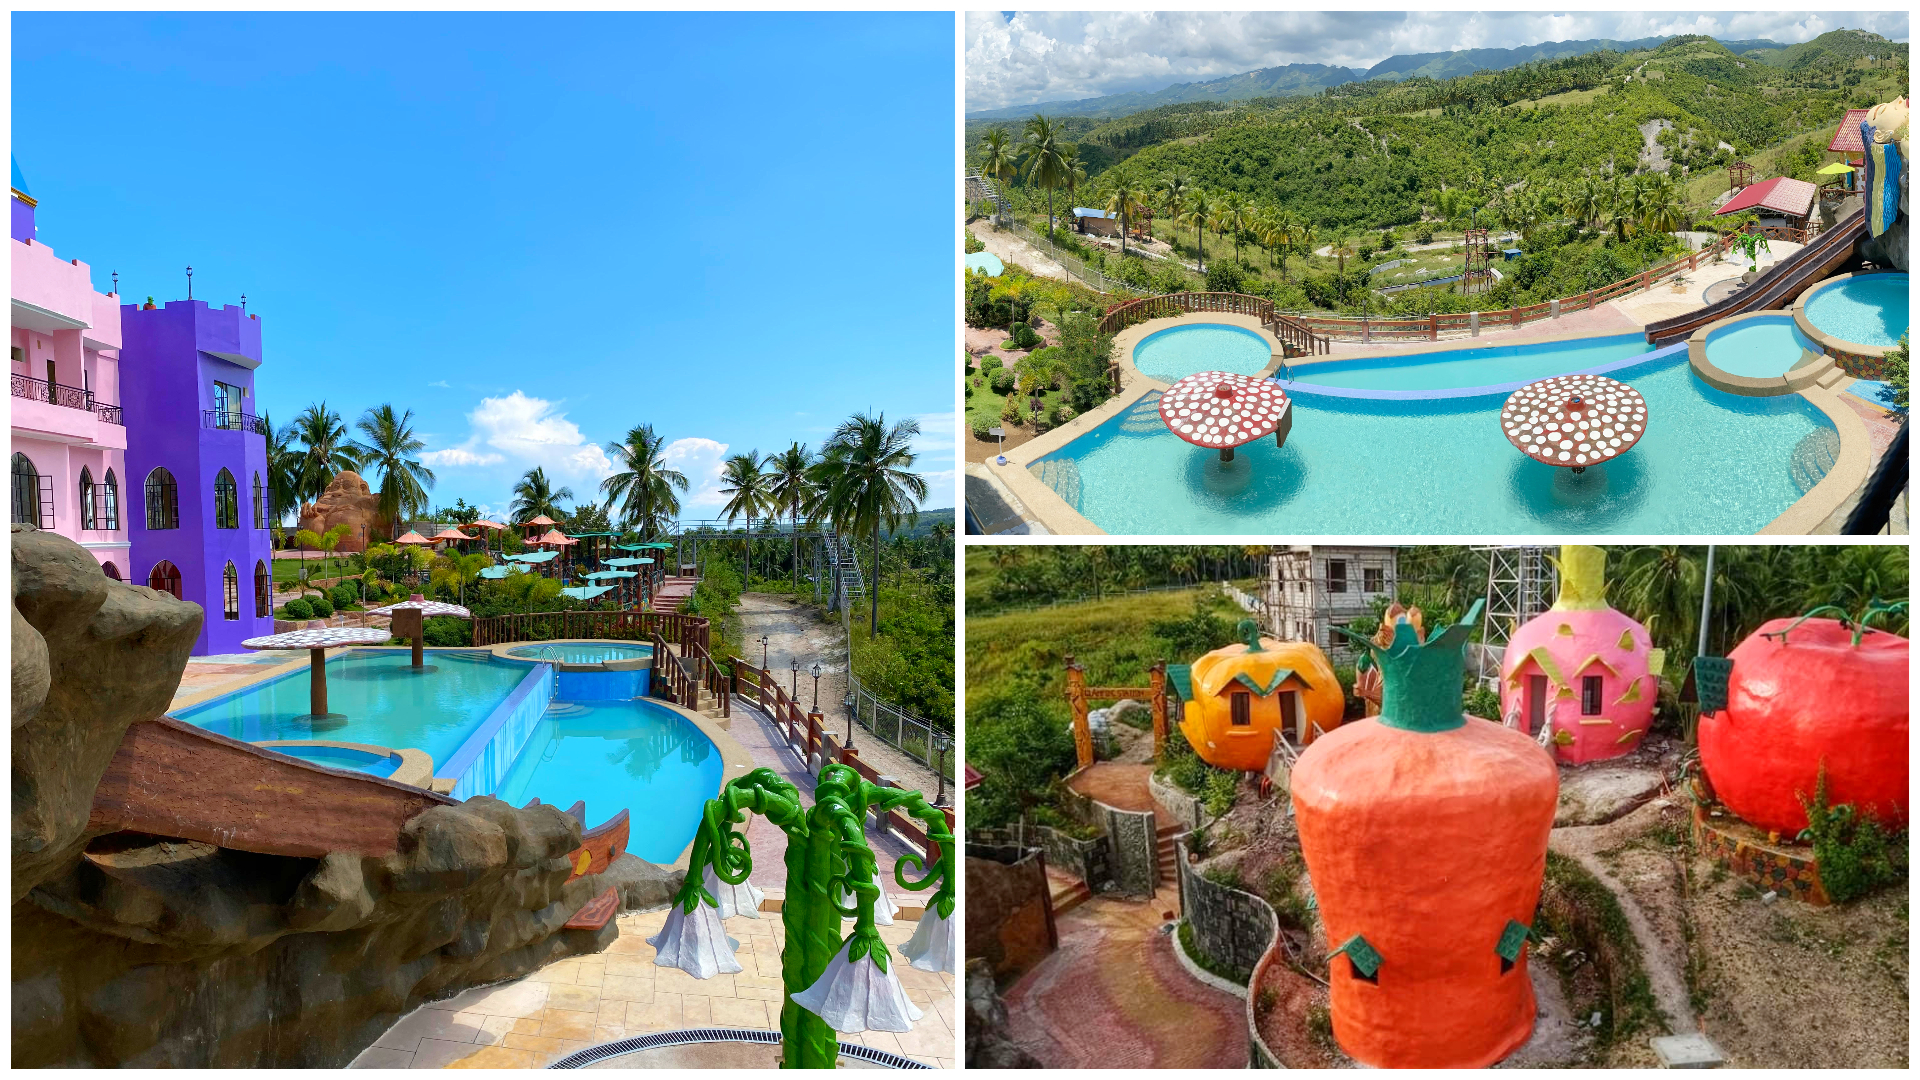 1 Enchanted Mountain Resort Dalaguete Cebu